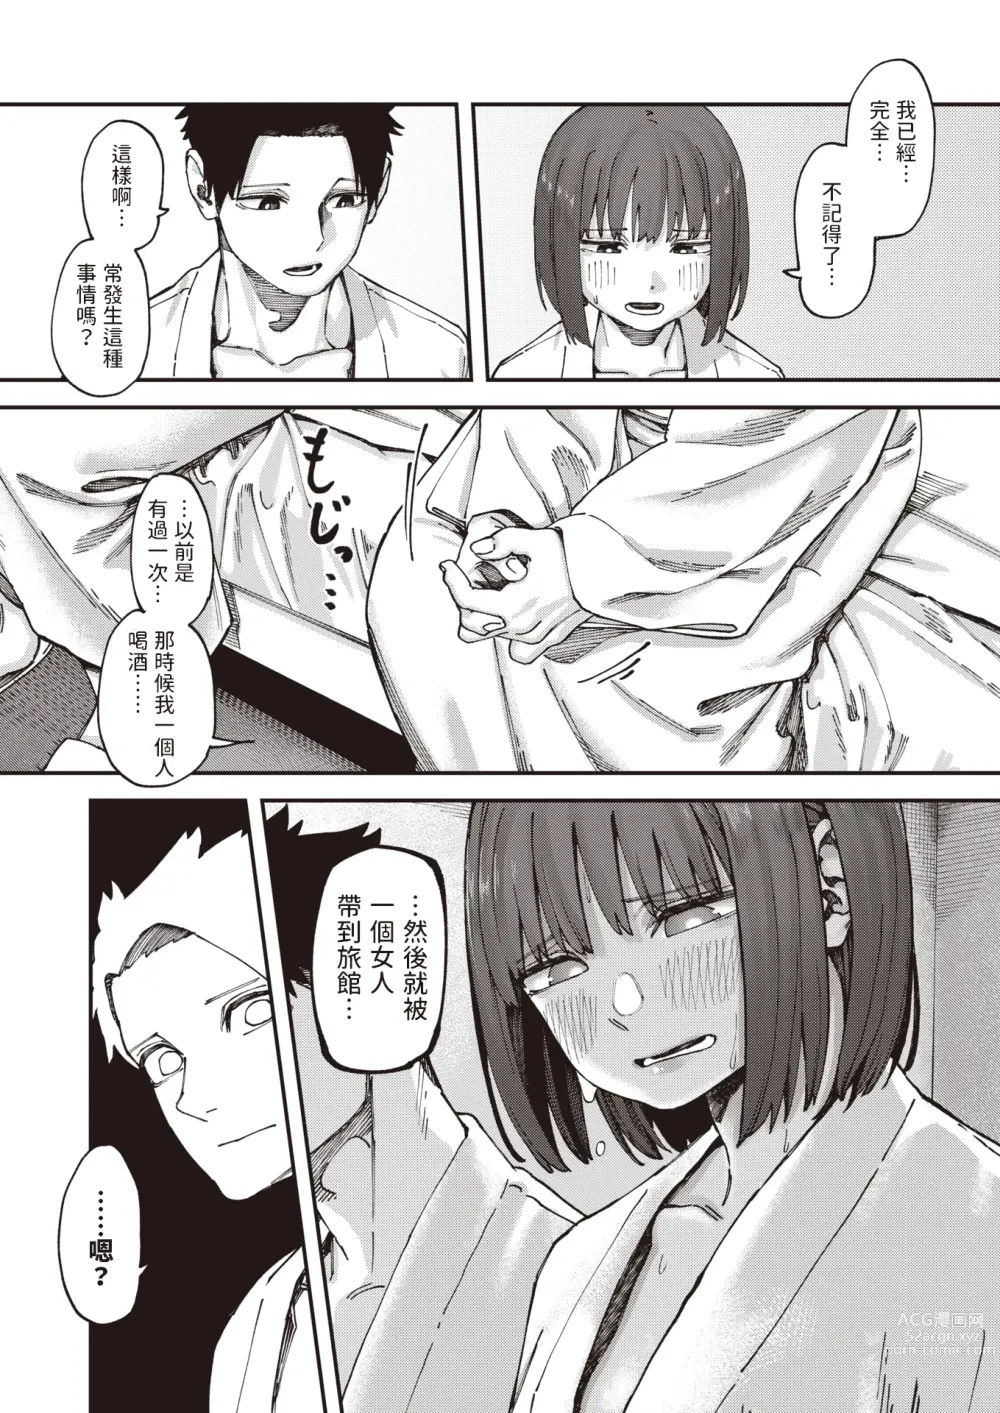 Page 6 of manga Otomodachi kara